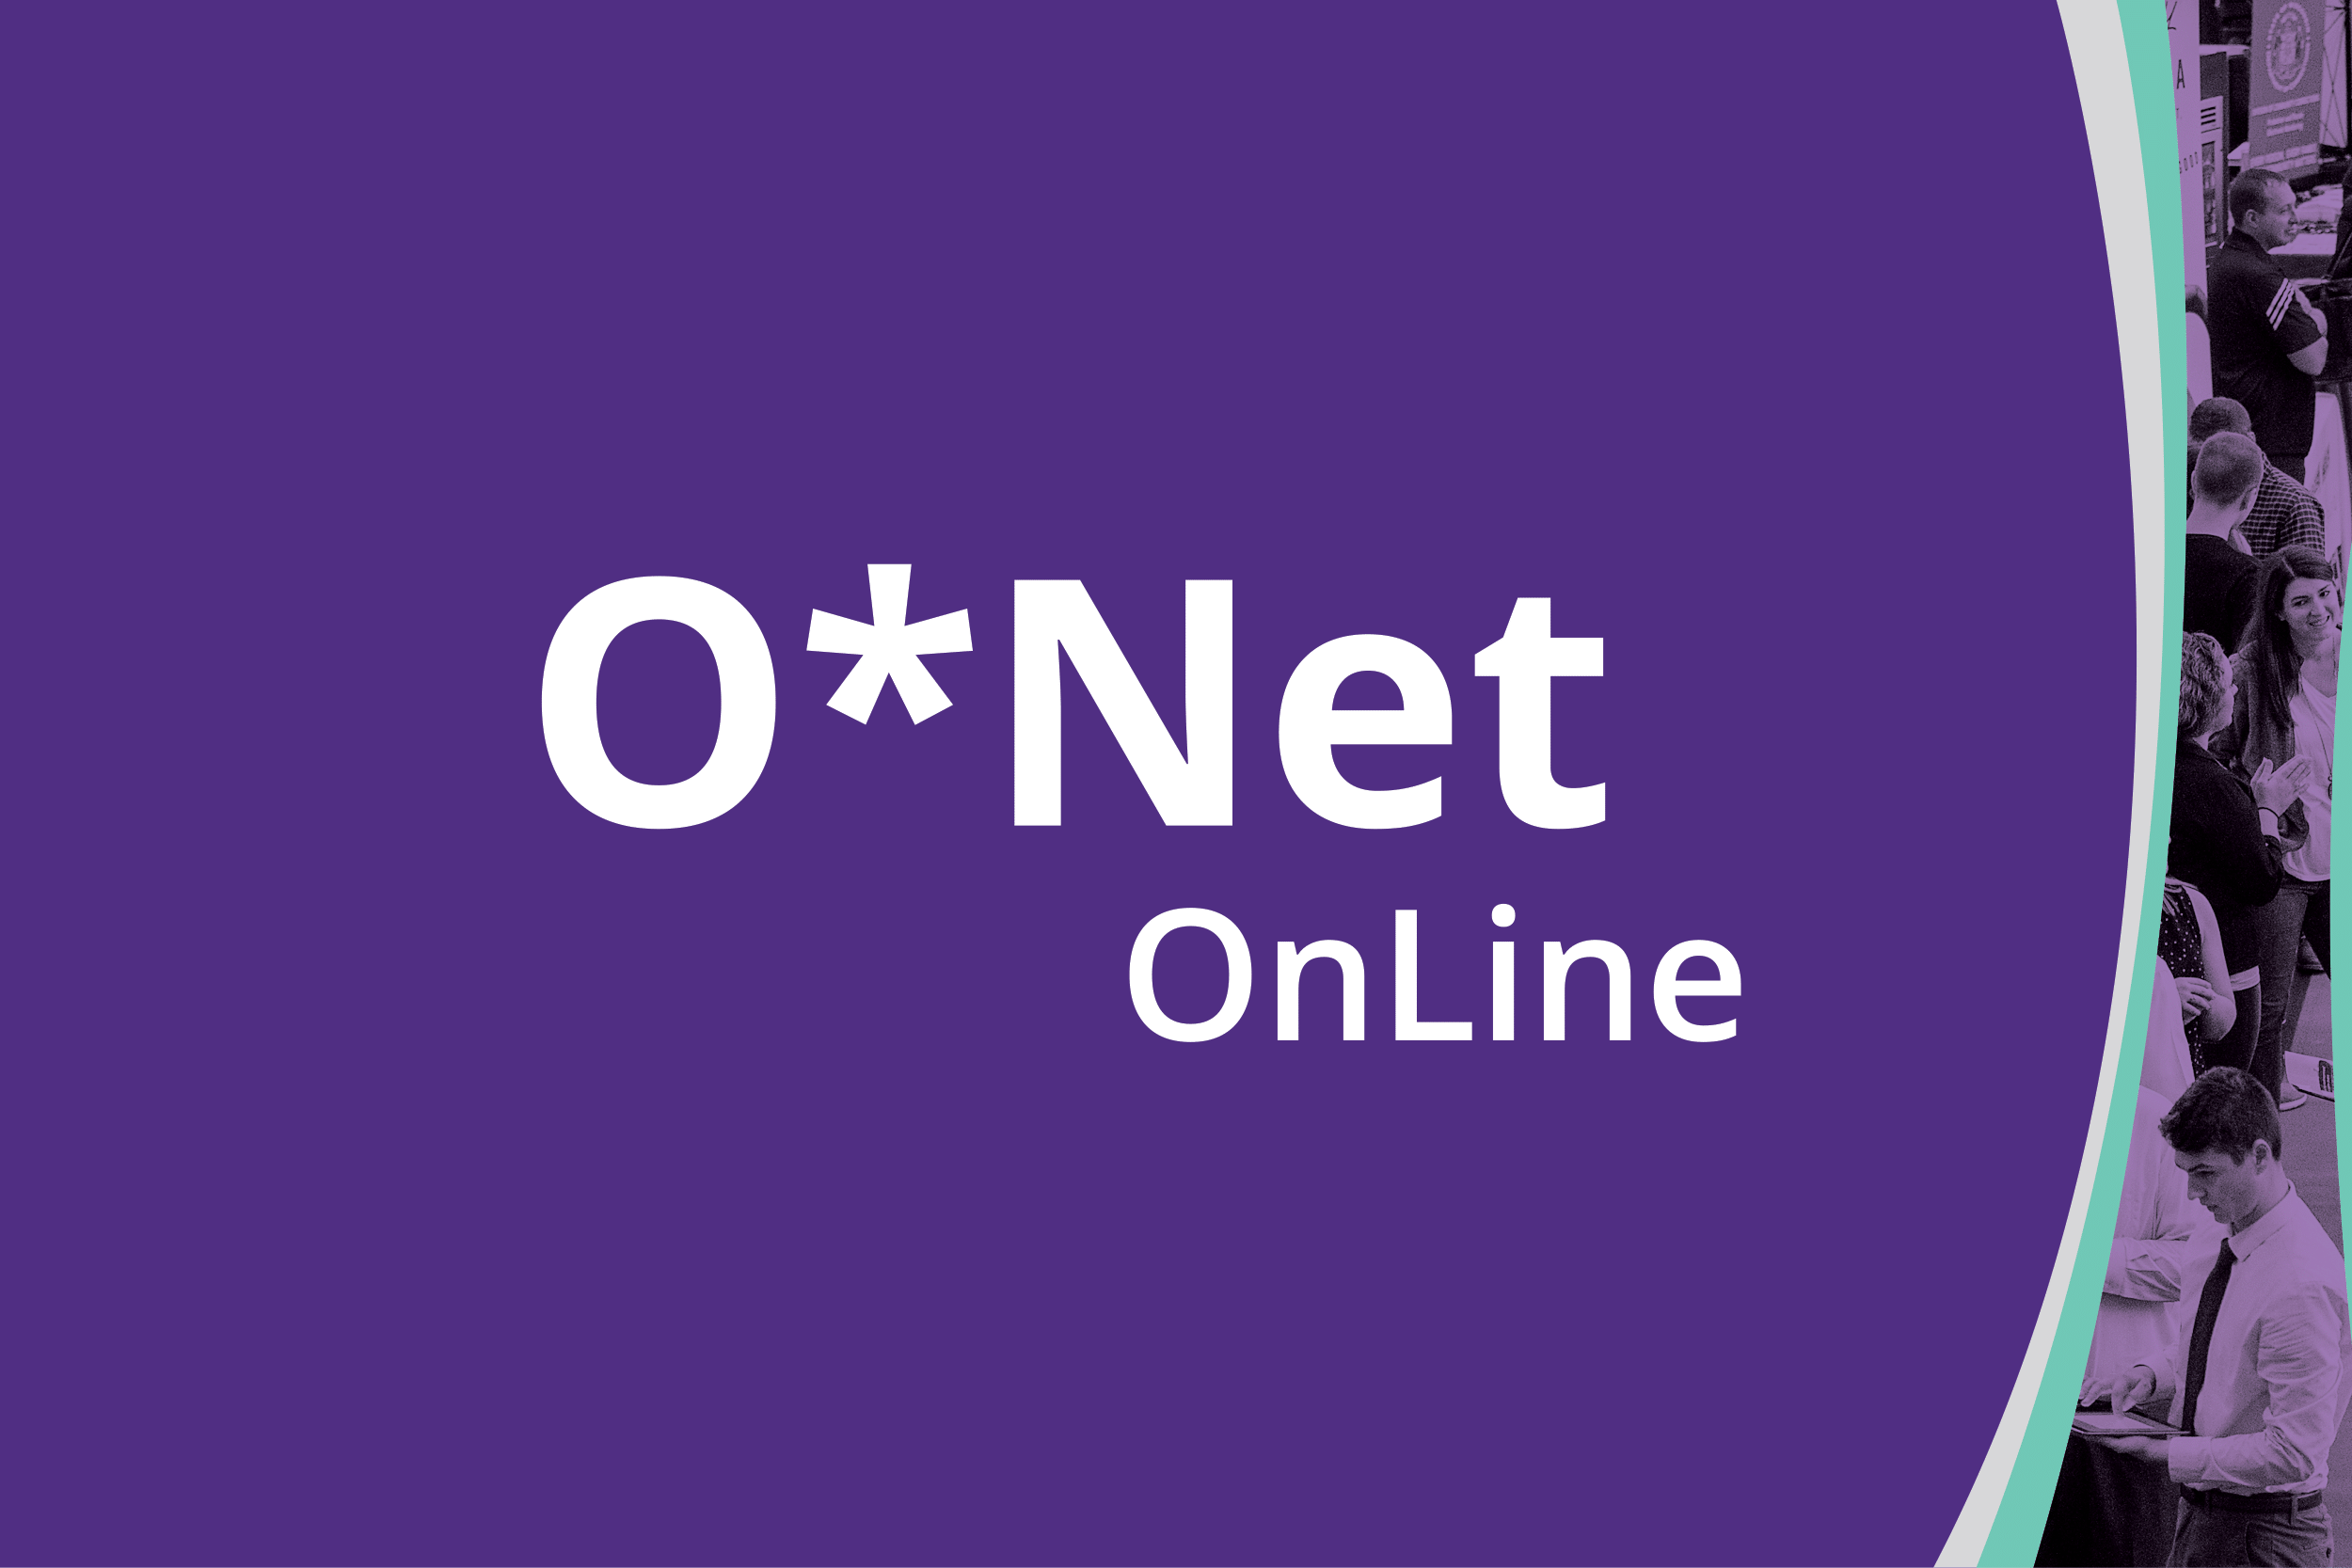 O*NET Online